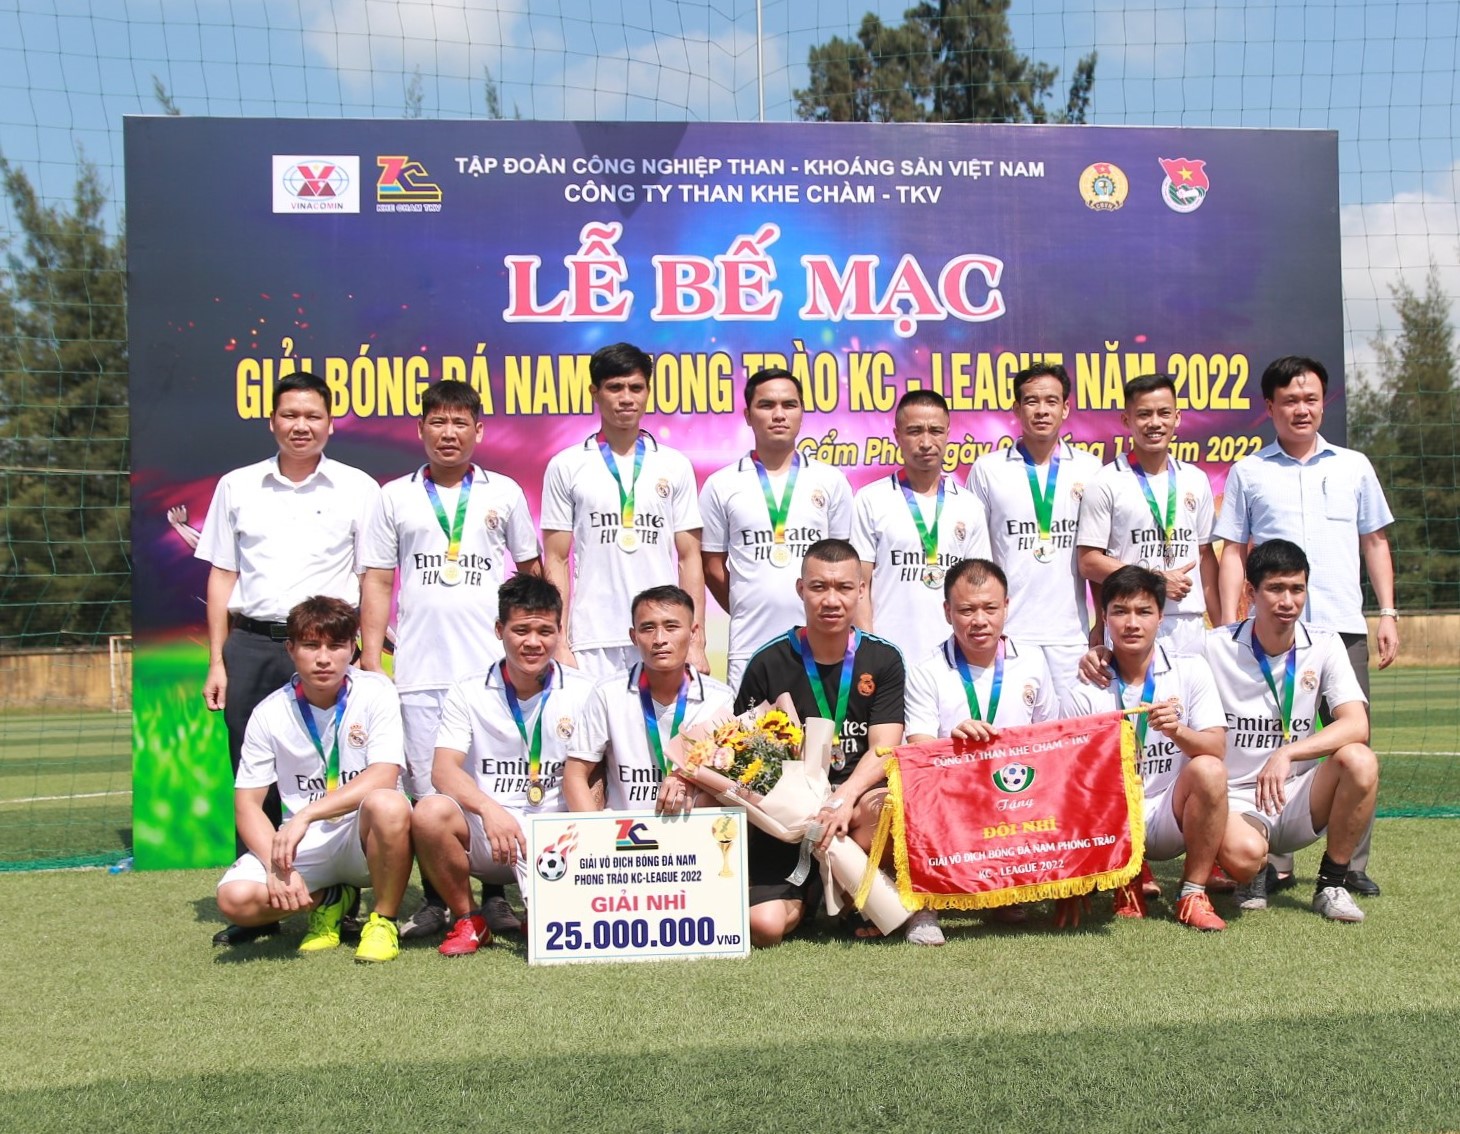 Giải bóng đá Nam phong trào KC - League năm 2022 Công ty than Khe Chàm - TKV thành công tốt đẹp